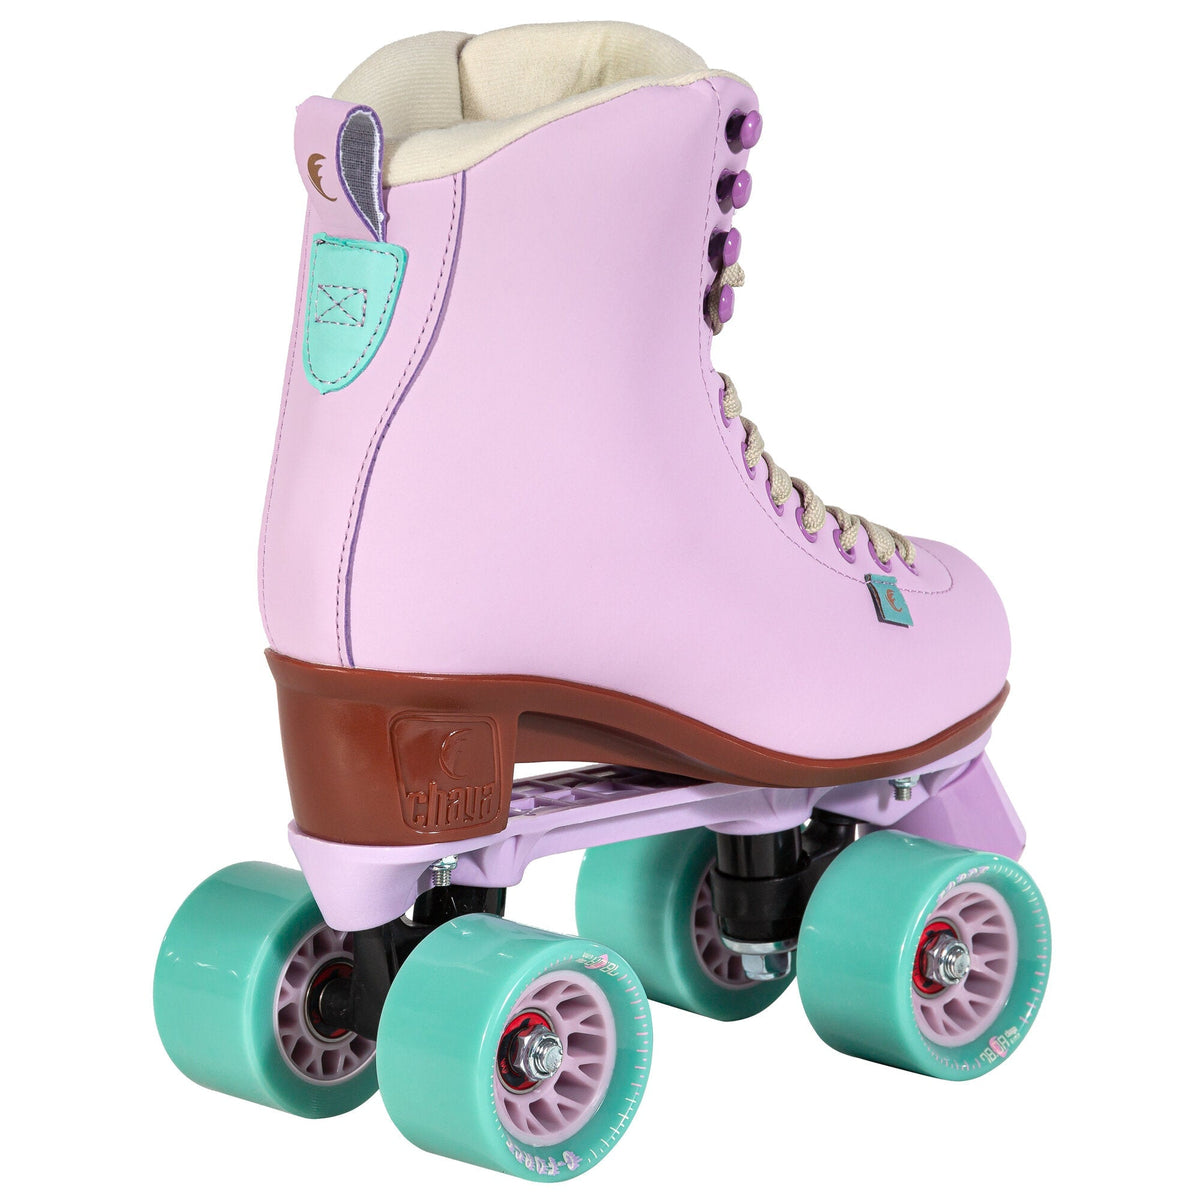 Chaya Melrose Skate - Lavender Roller Skates